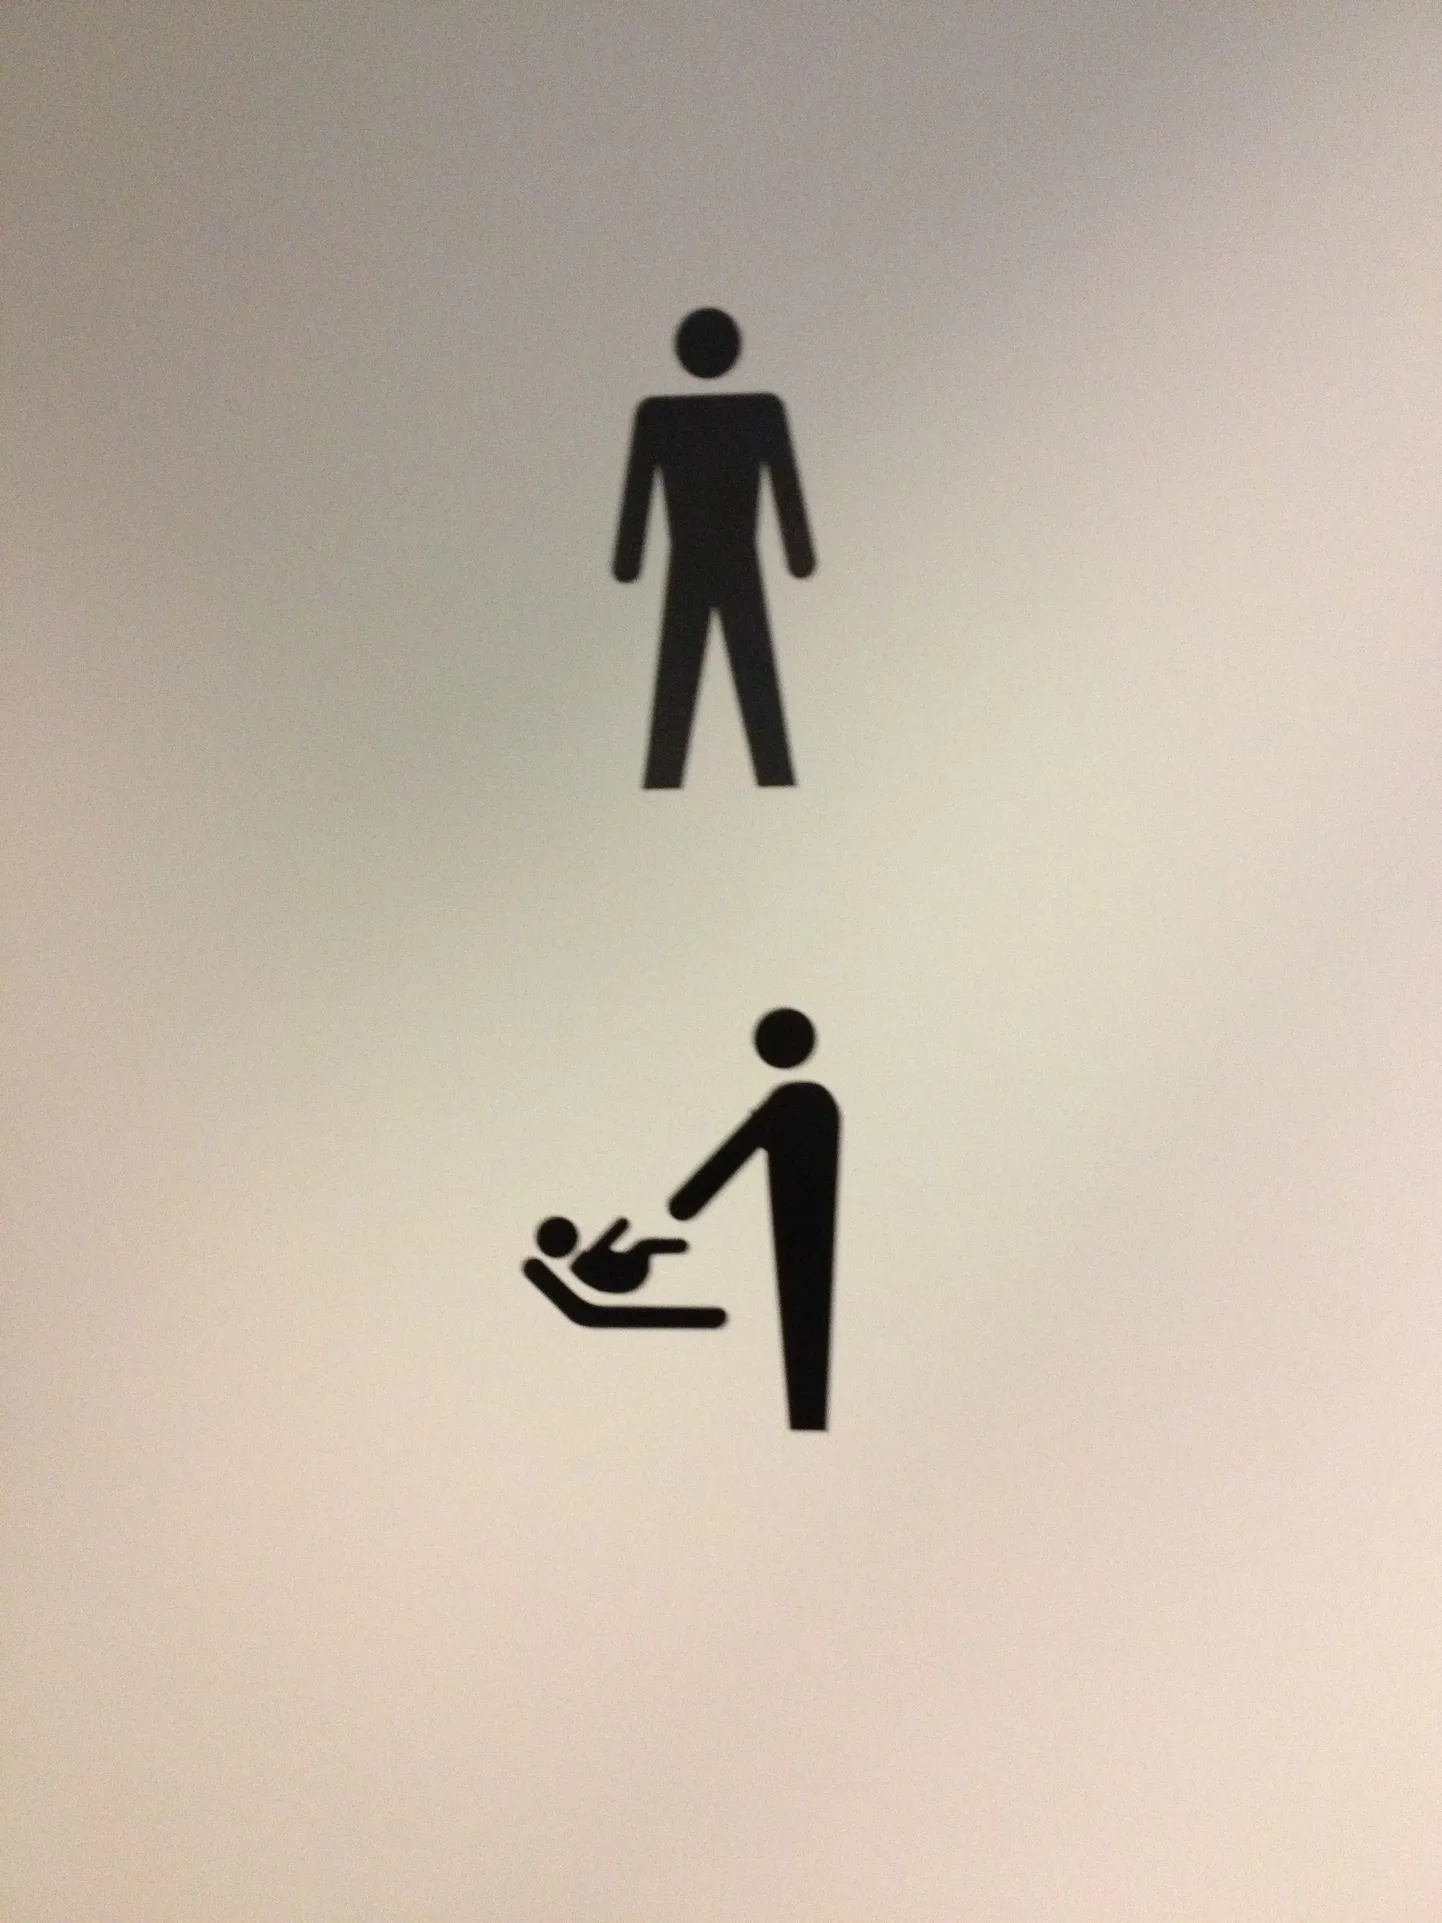 Mähkimisruumi tähis Kopenhaageni avalikus WC-s.